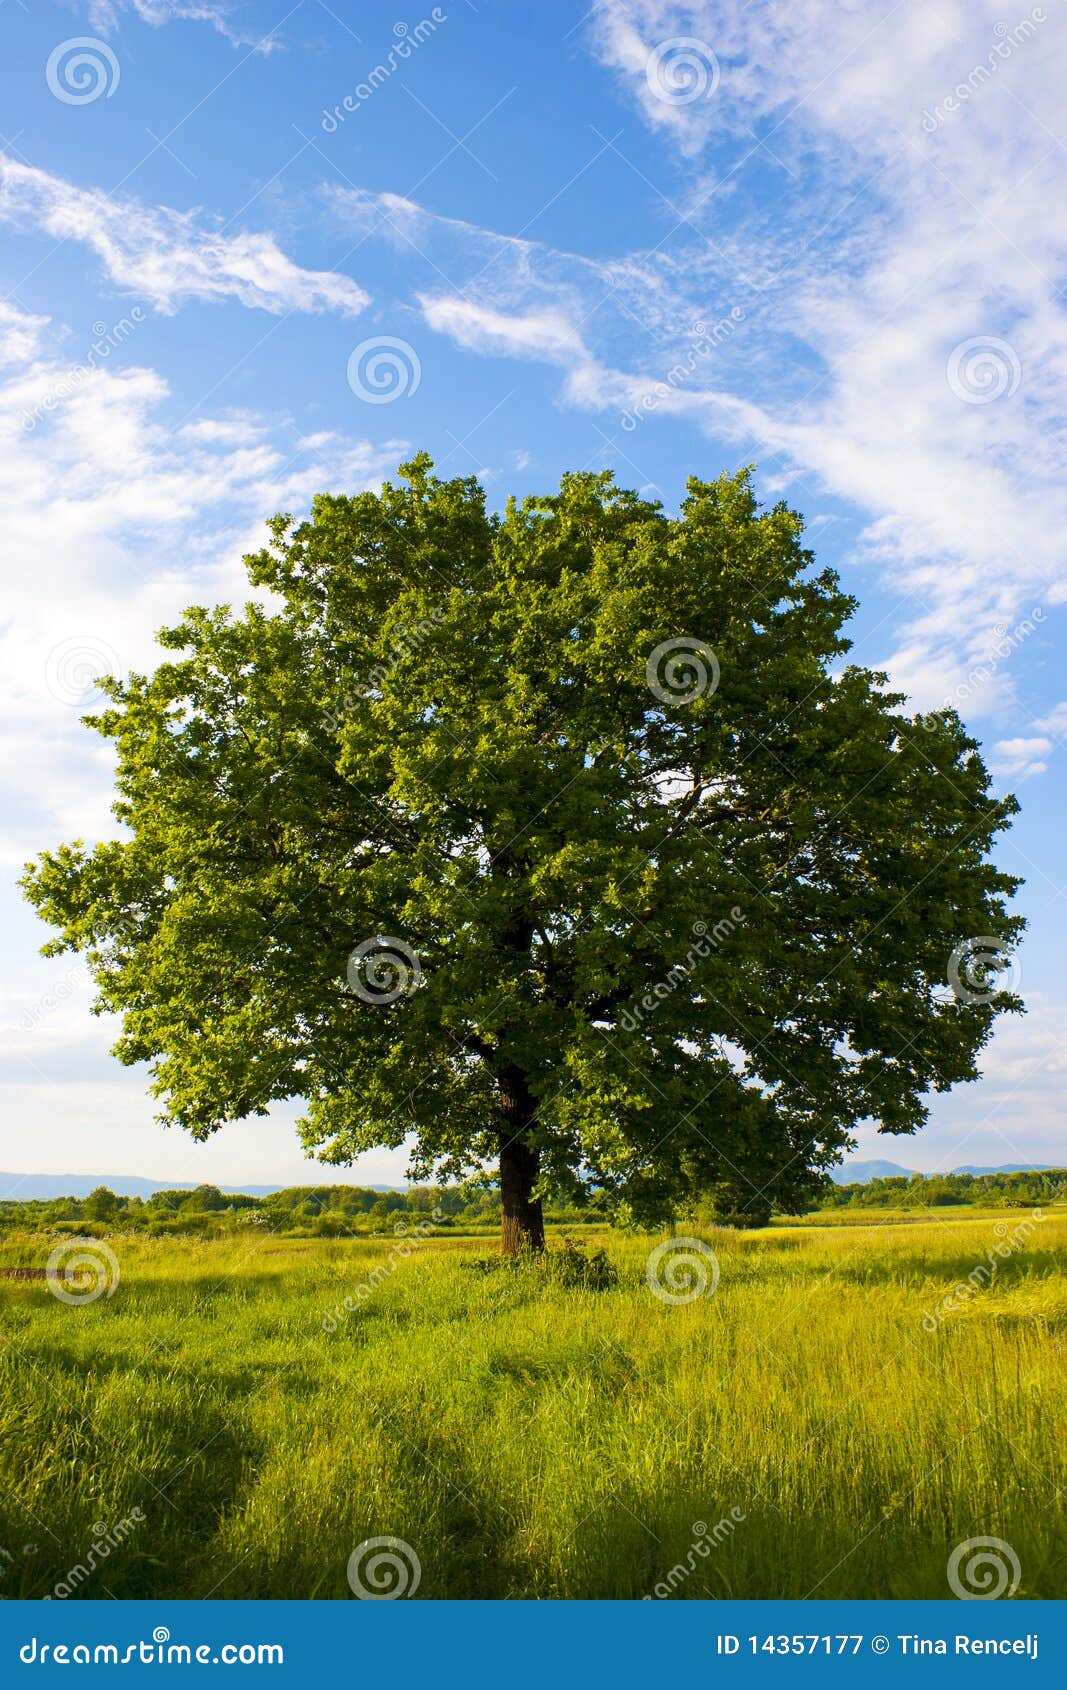 solitary oak tree